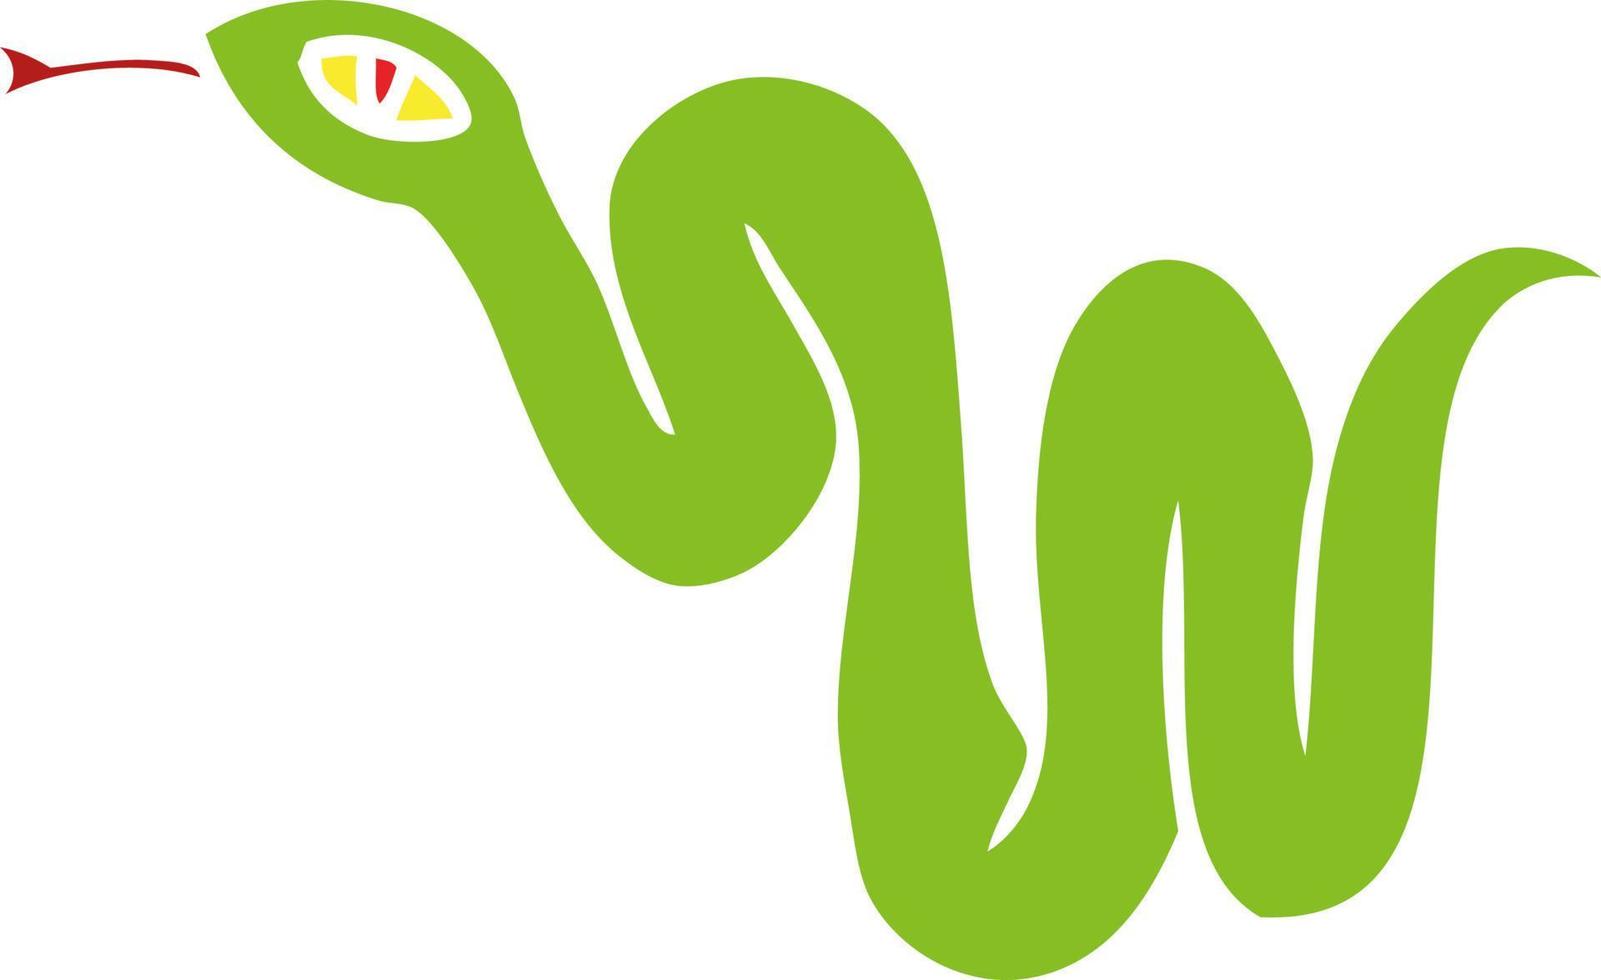 garabato de dibujos animados de una serpiente de jardín vector